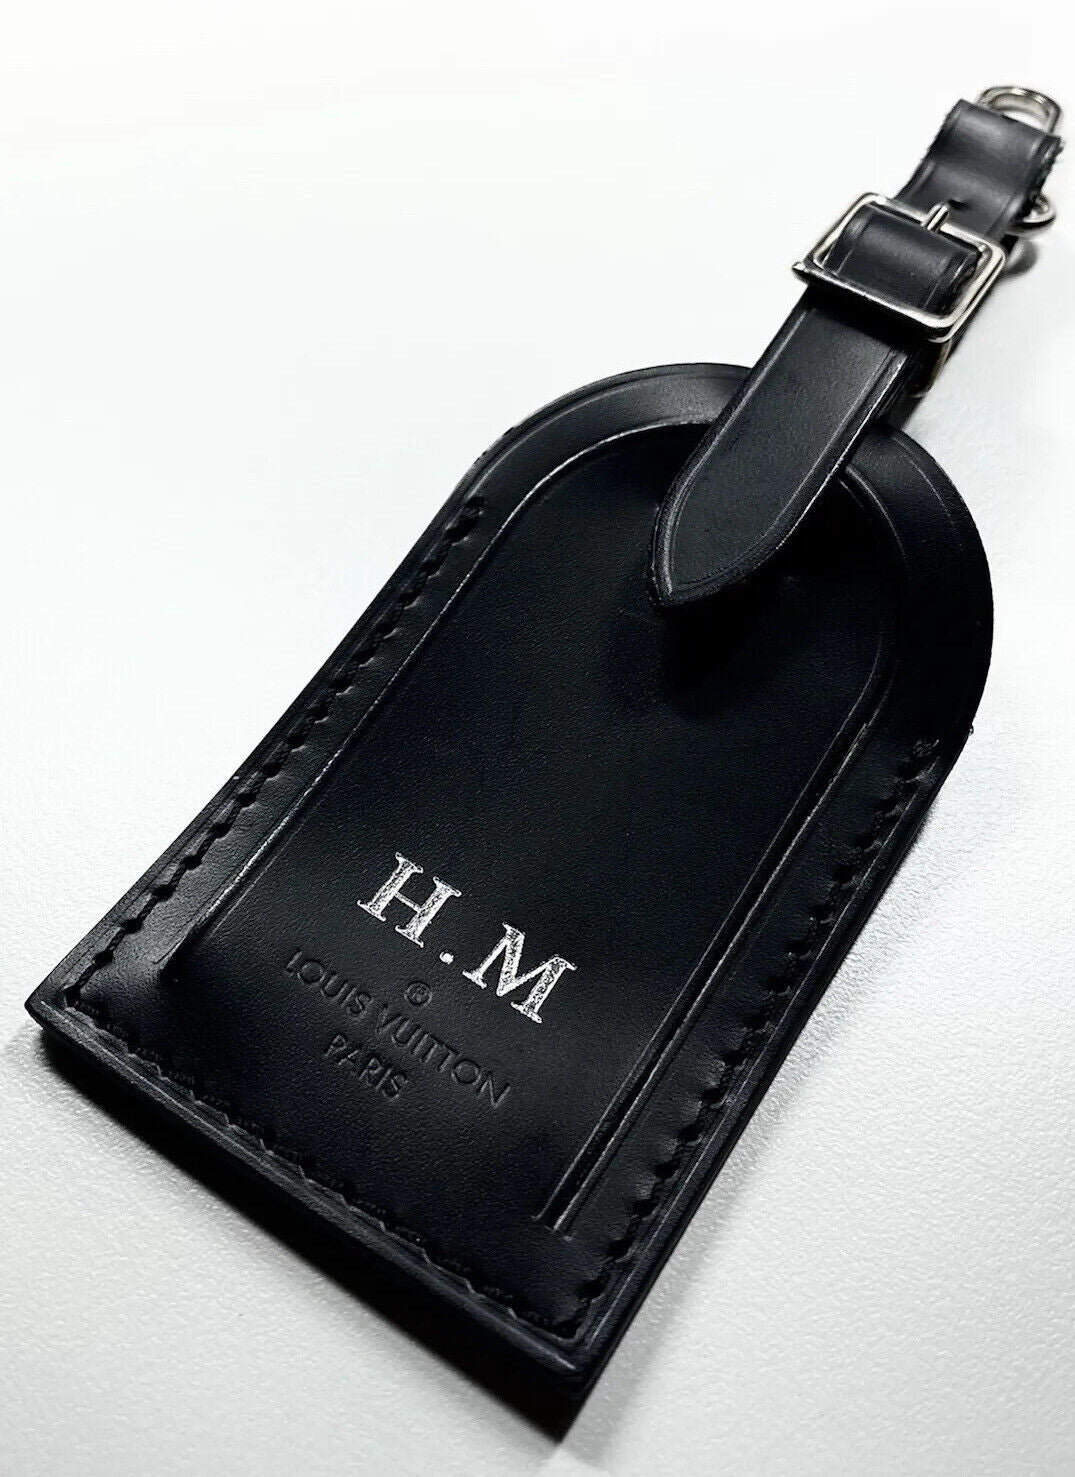 Louis Vuitton Black Luggage Tag w/ HM Initials Silvertone Calfskin